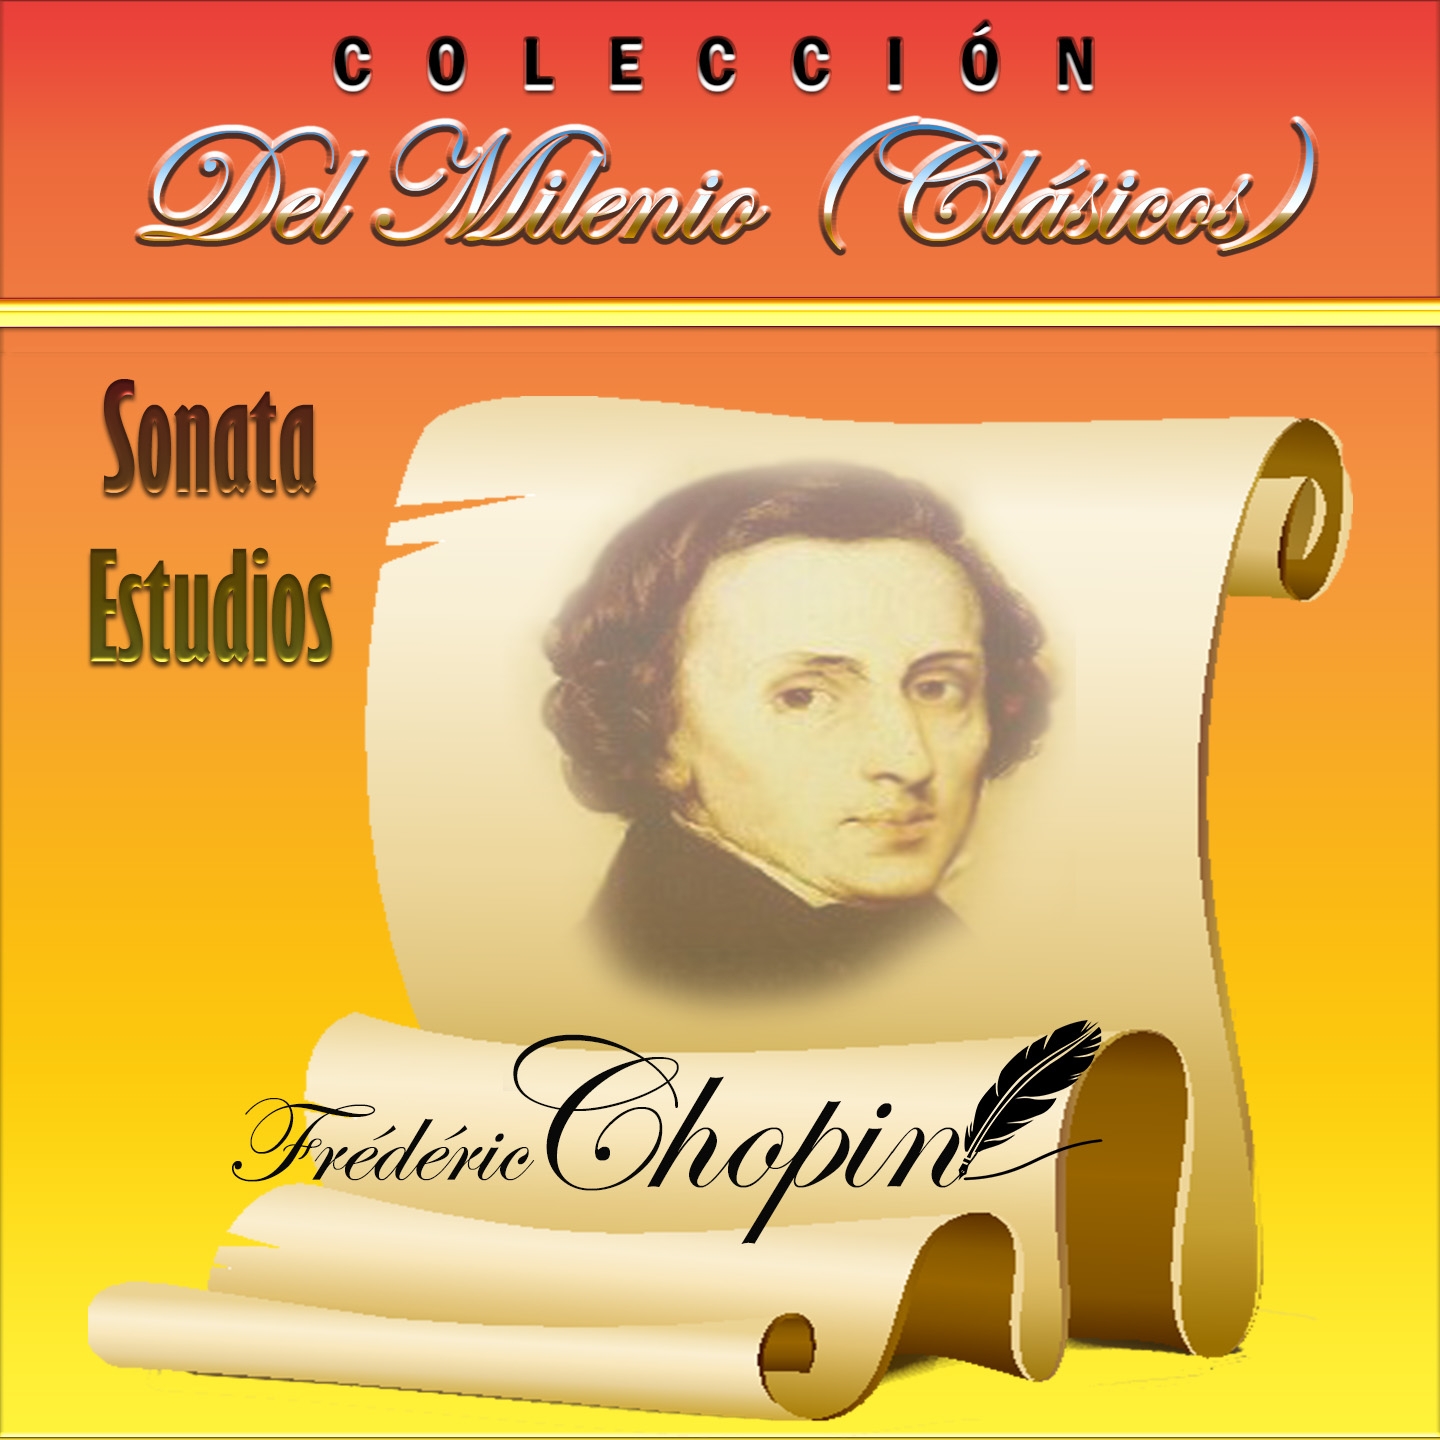 Colección del Milenio: Sonata y Estudios